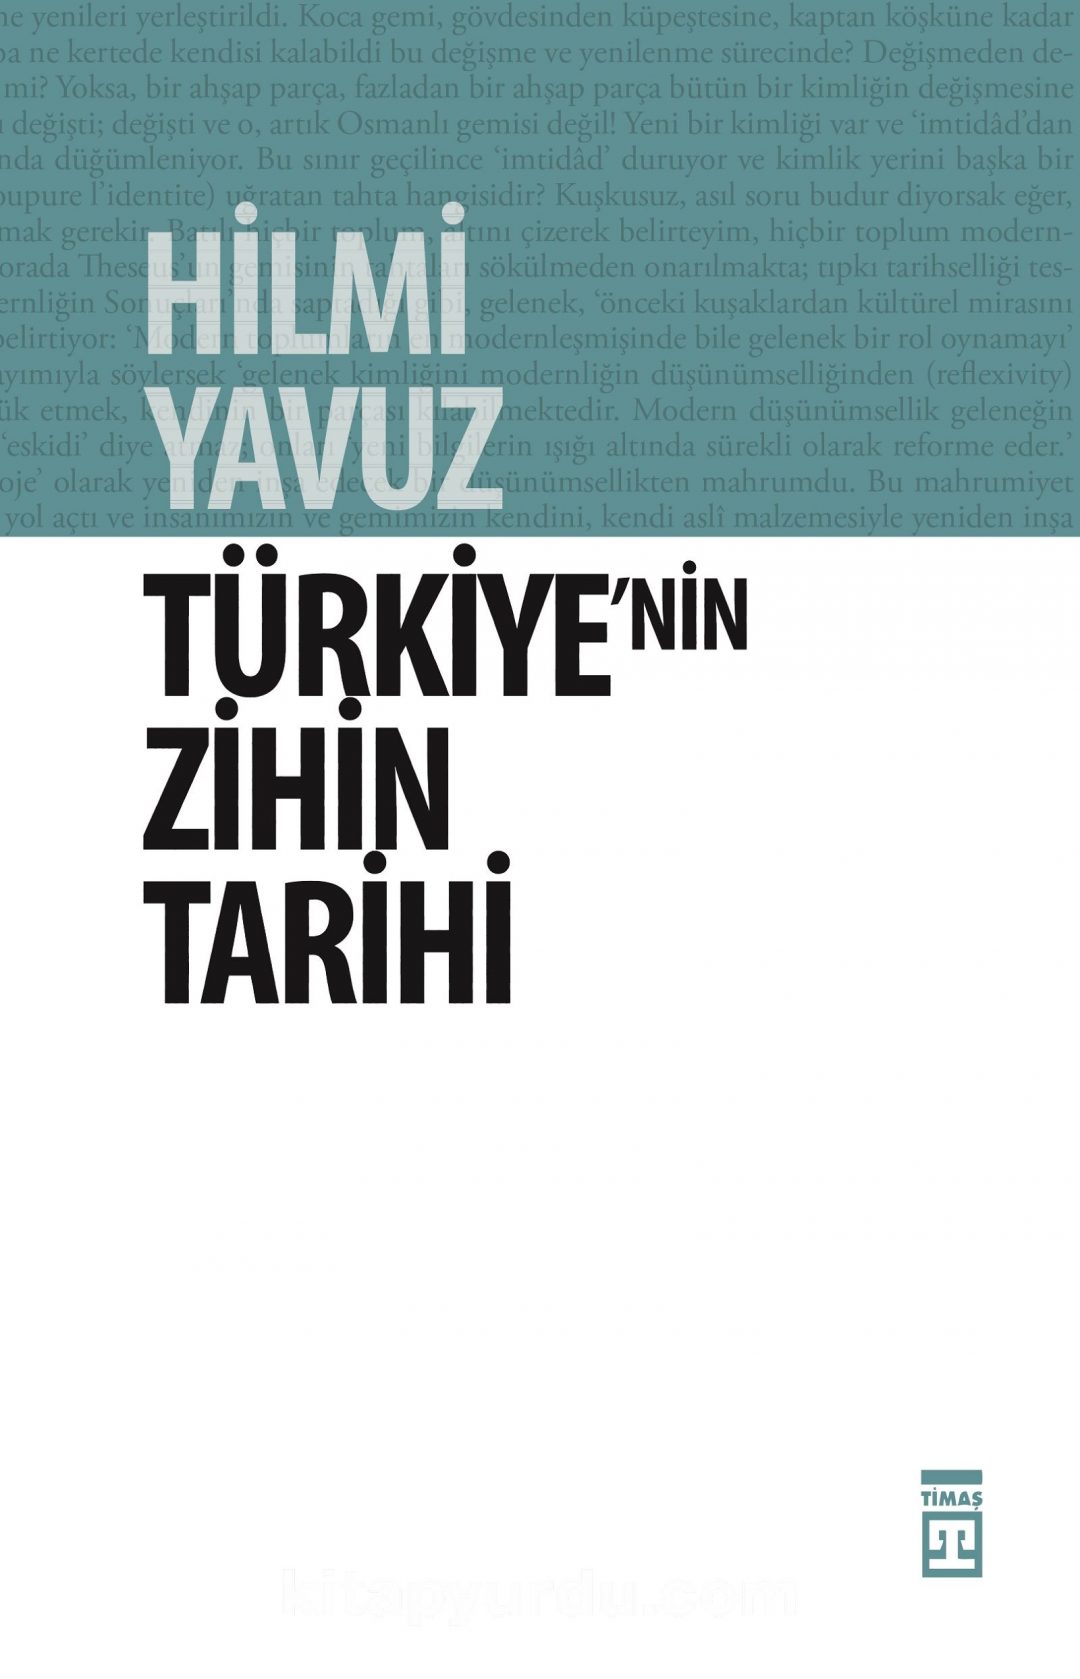 Türkiye'nin Zihin Tarihi & Türk Kültürü Üzerine Kuşatıcı Bir Söylev